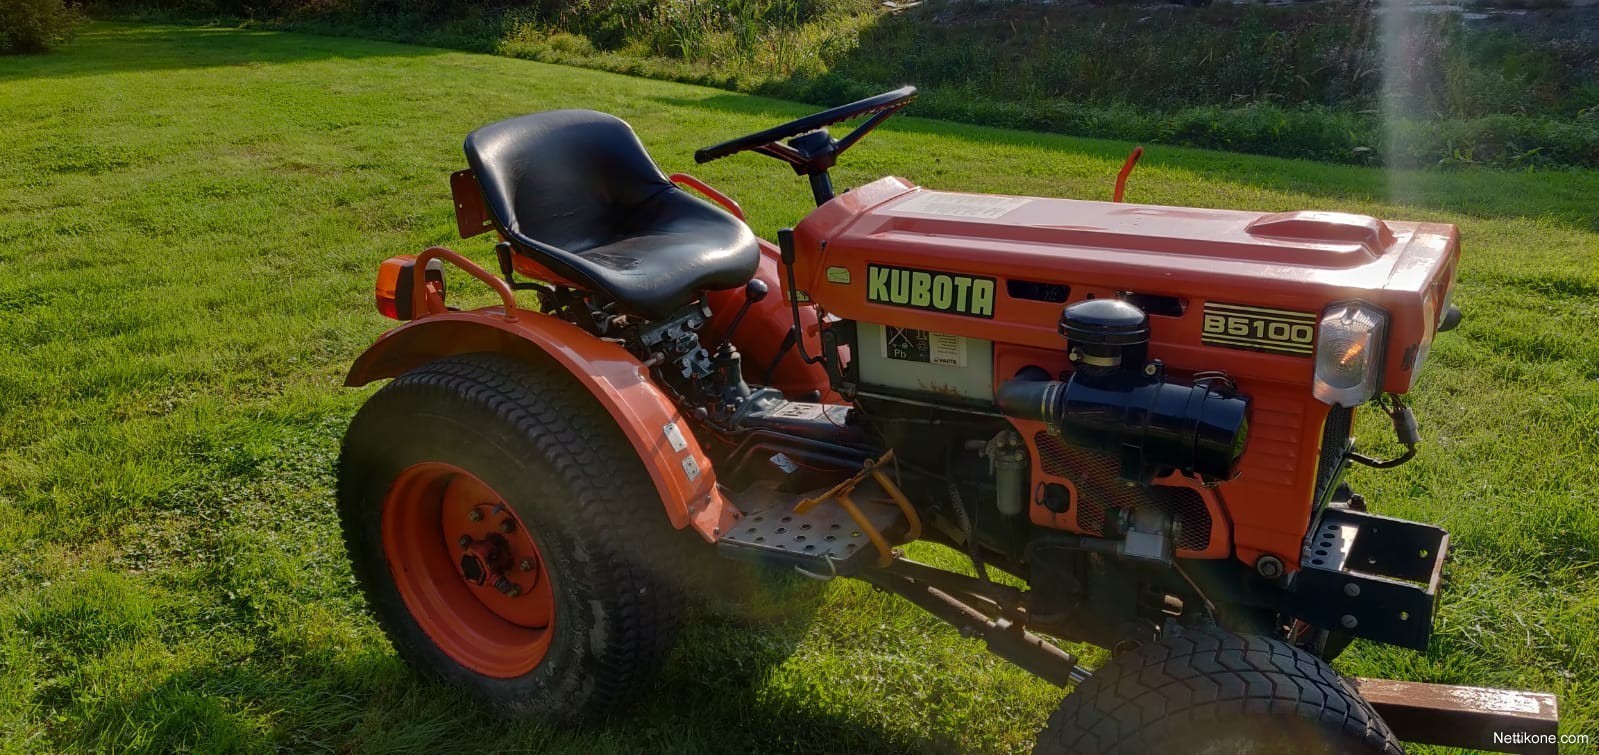 Kubota B5100 tractors, 1988 - Nettikone